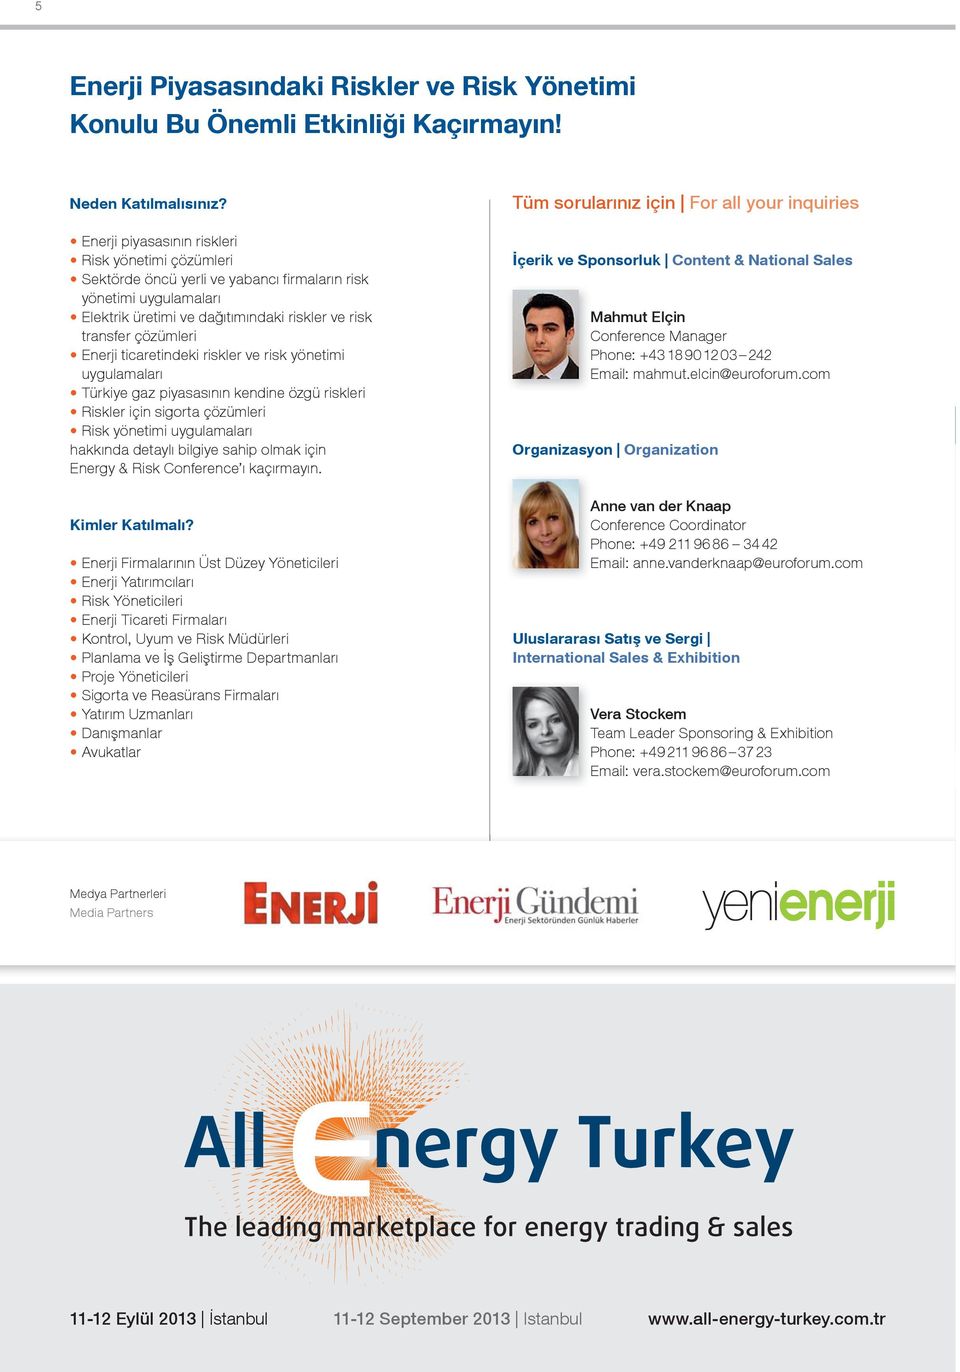 ticaretindeki riskler ve risk yönetimi uygulamaları Türkiye gaz piyasasının kendine özgü riskleri Riskler için sigorta çözümleri Risk yönetimi uygulamaları hakkında detaylı bilgiye sahip olmak için